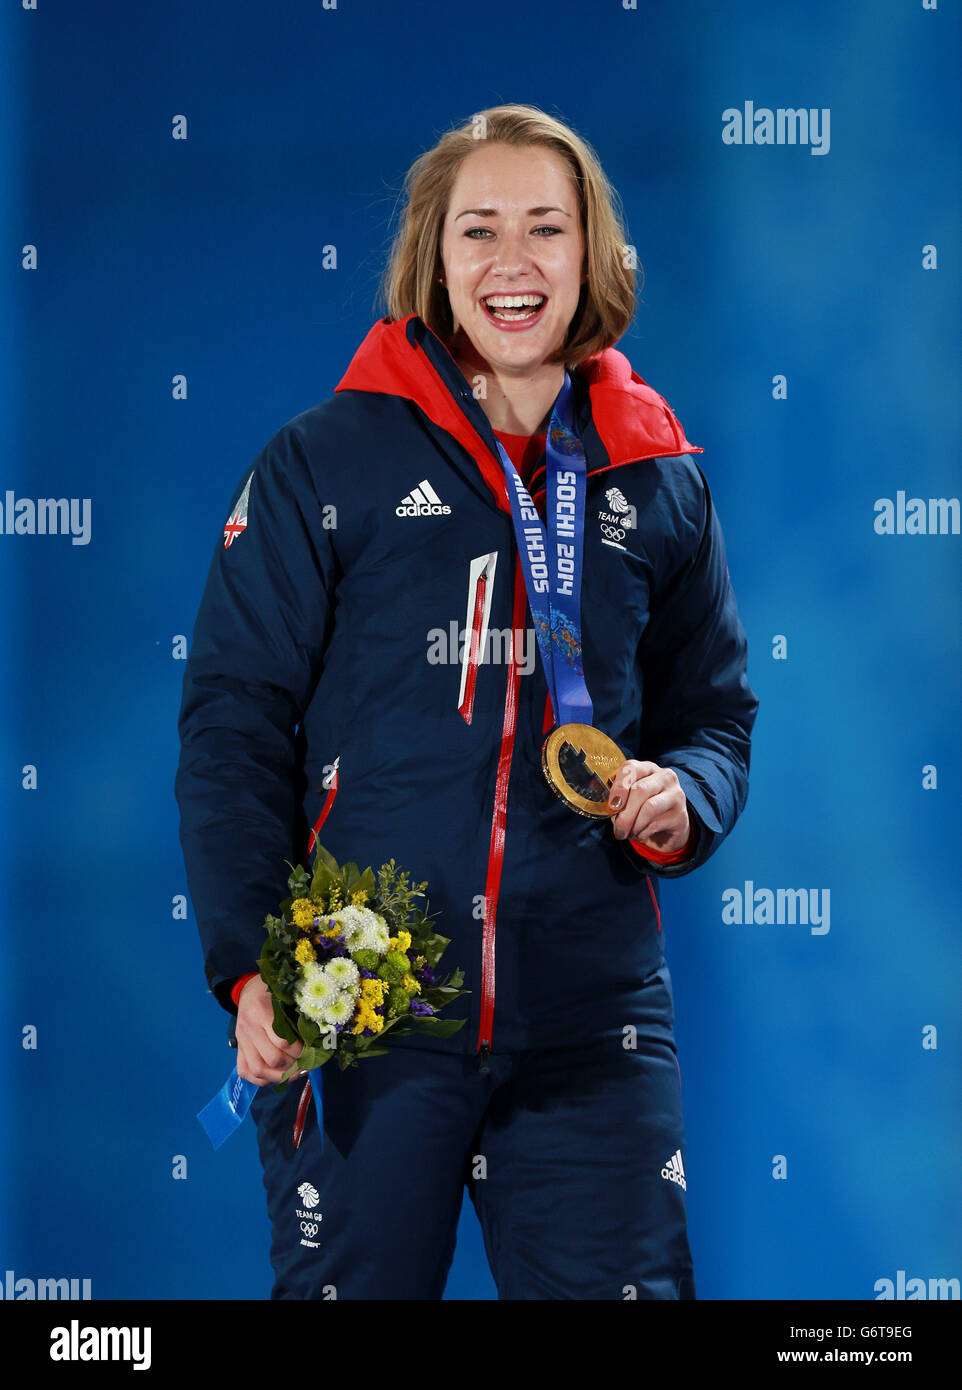 Die britische Lizzy Yarnold erhielt ihre Goldmedaille für das Frauenskelett während der Medaillenzeremonie auf der Medals Plaza bei den Olympischen Spielen 2014 in Sotschi, Russland. Stockfoto